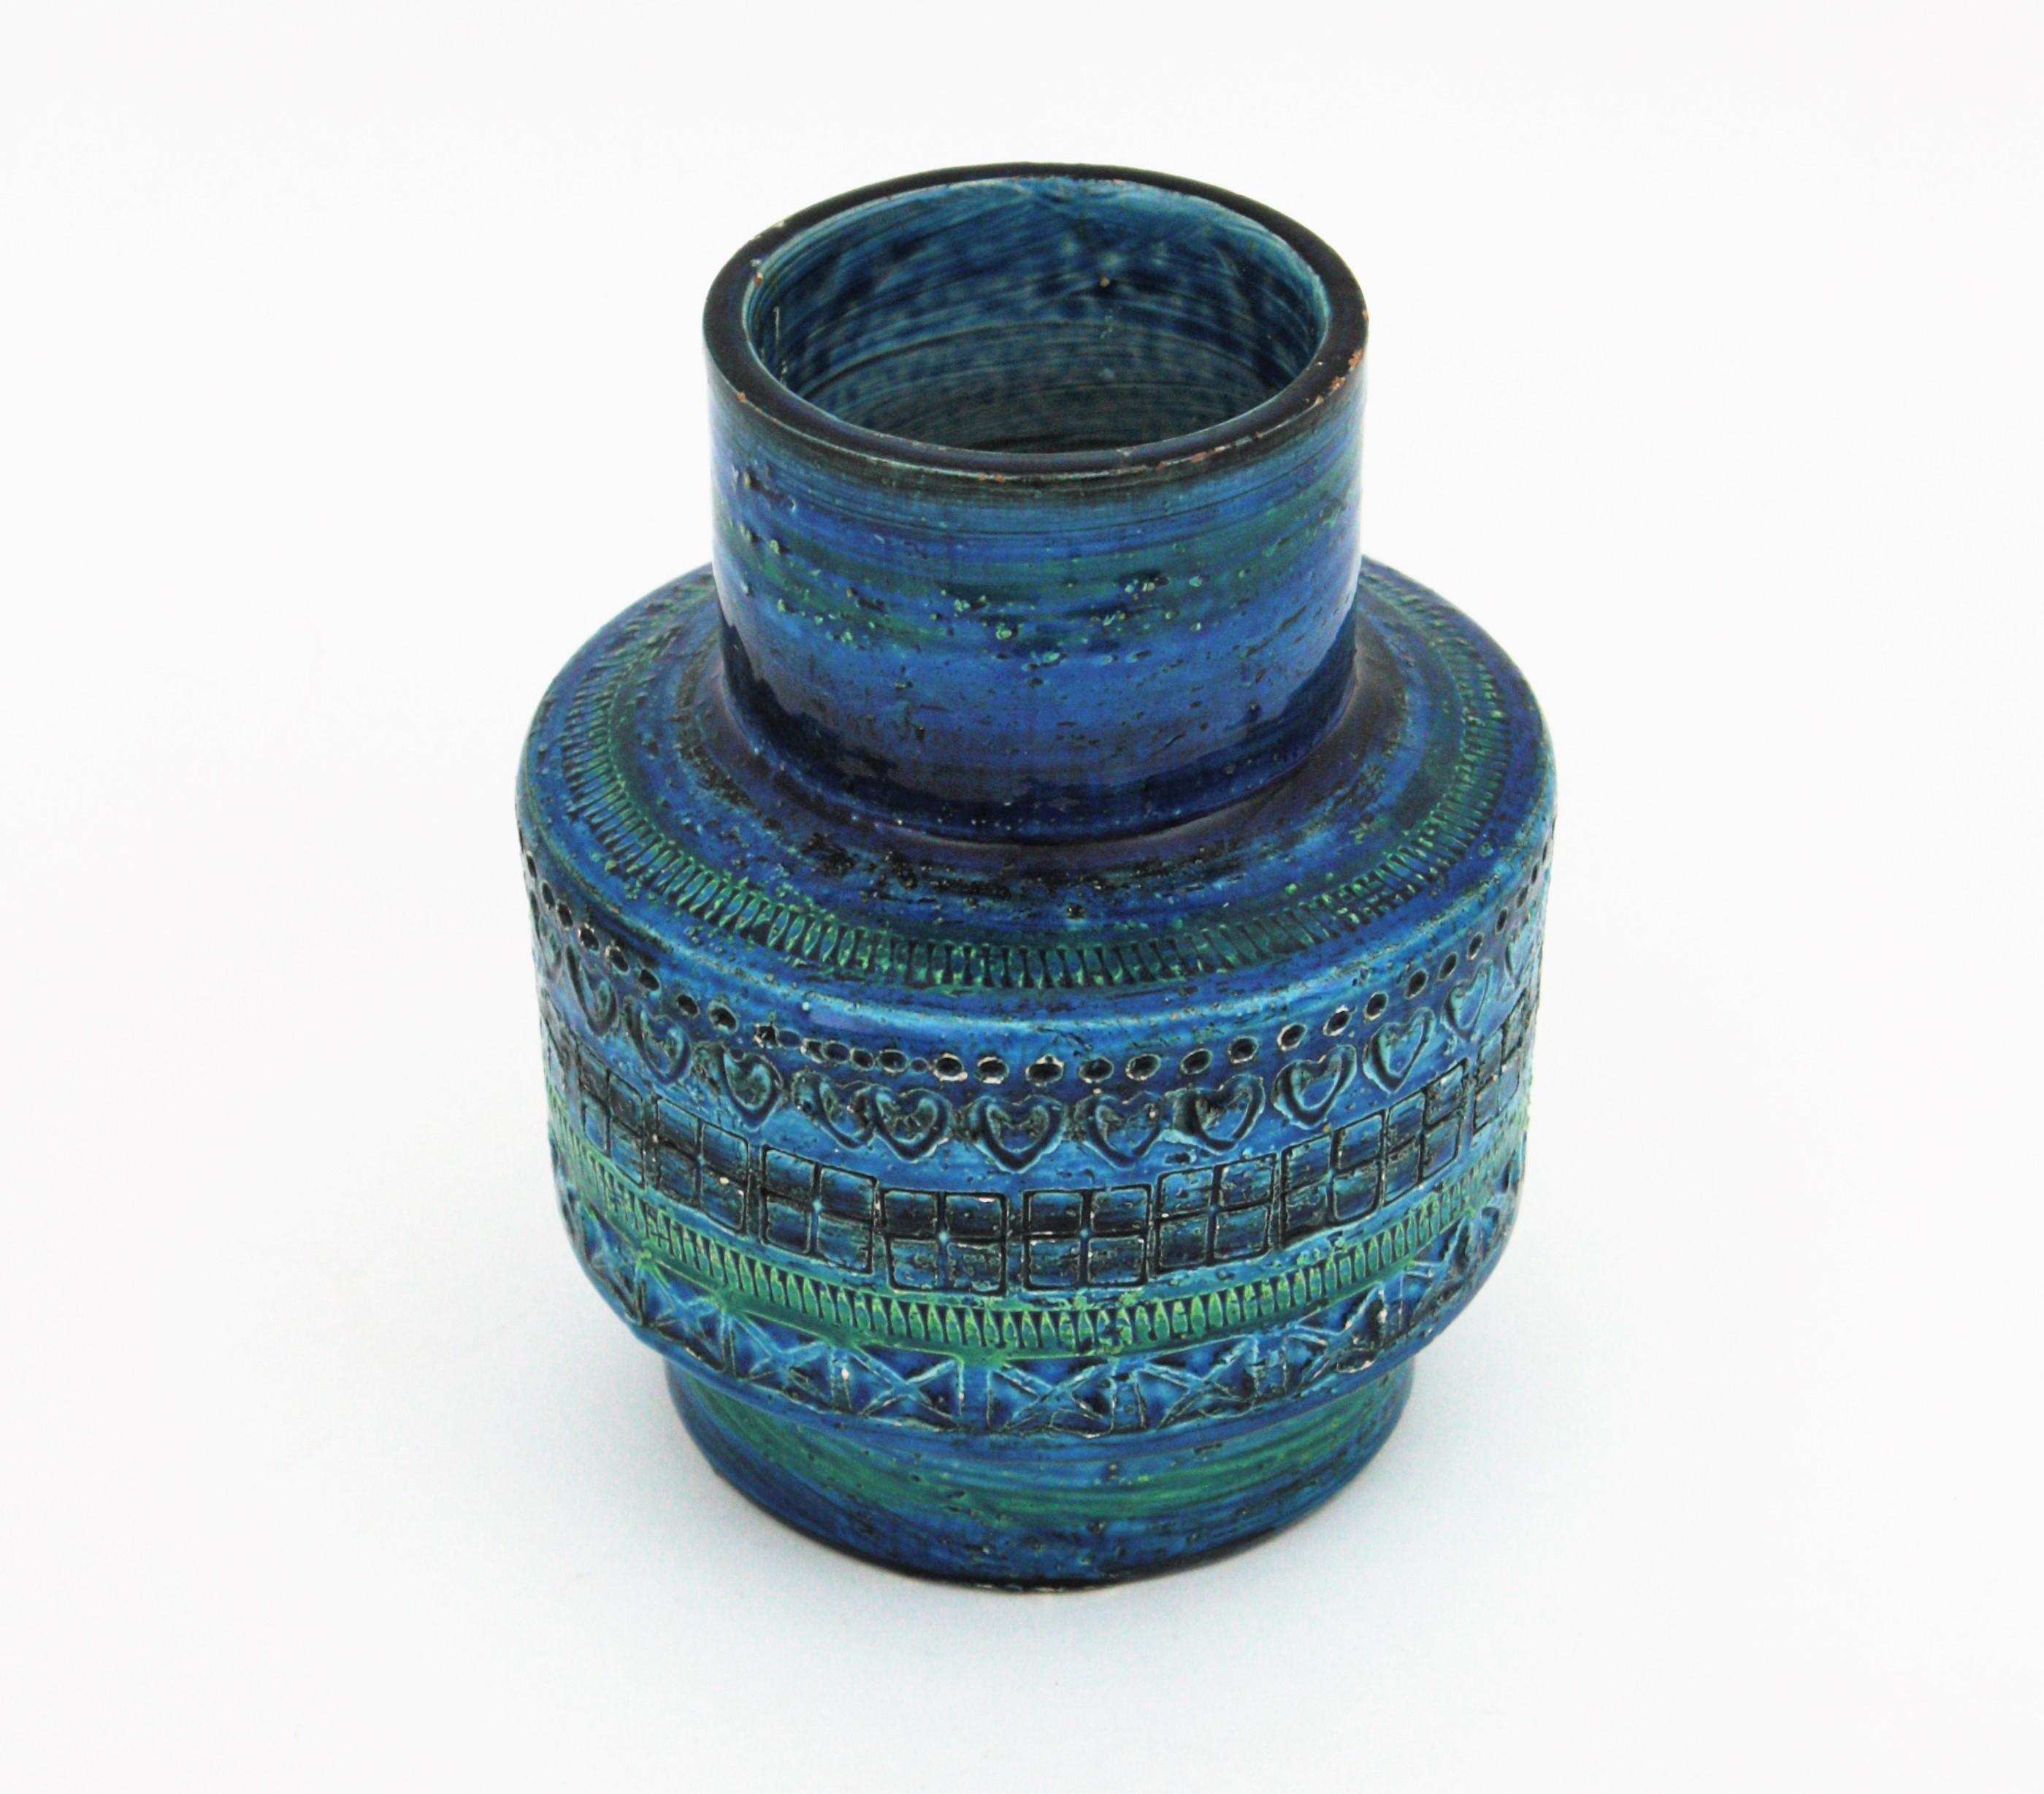 Hand-Crafted Bitossi Aldo Londi Rimini Blue Ceramic Vase